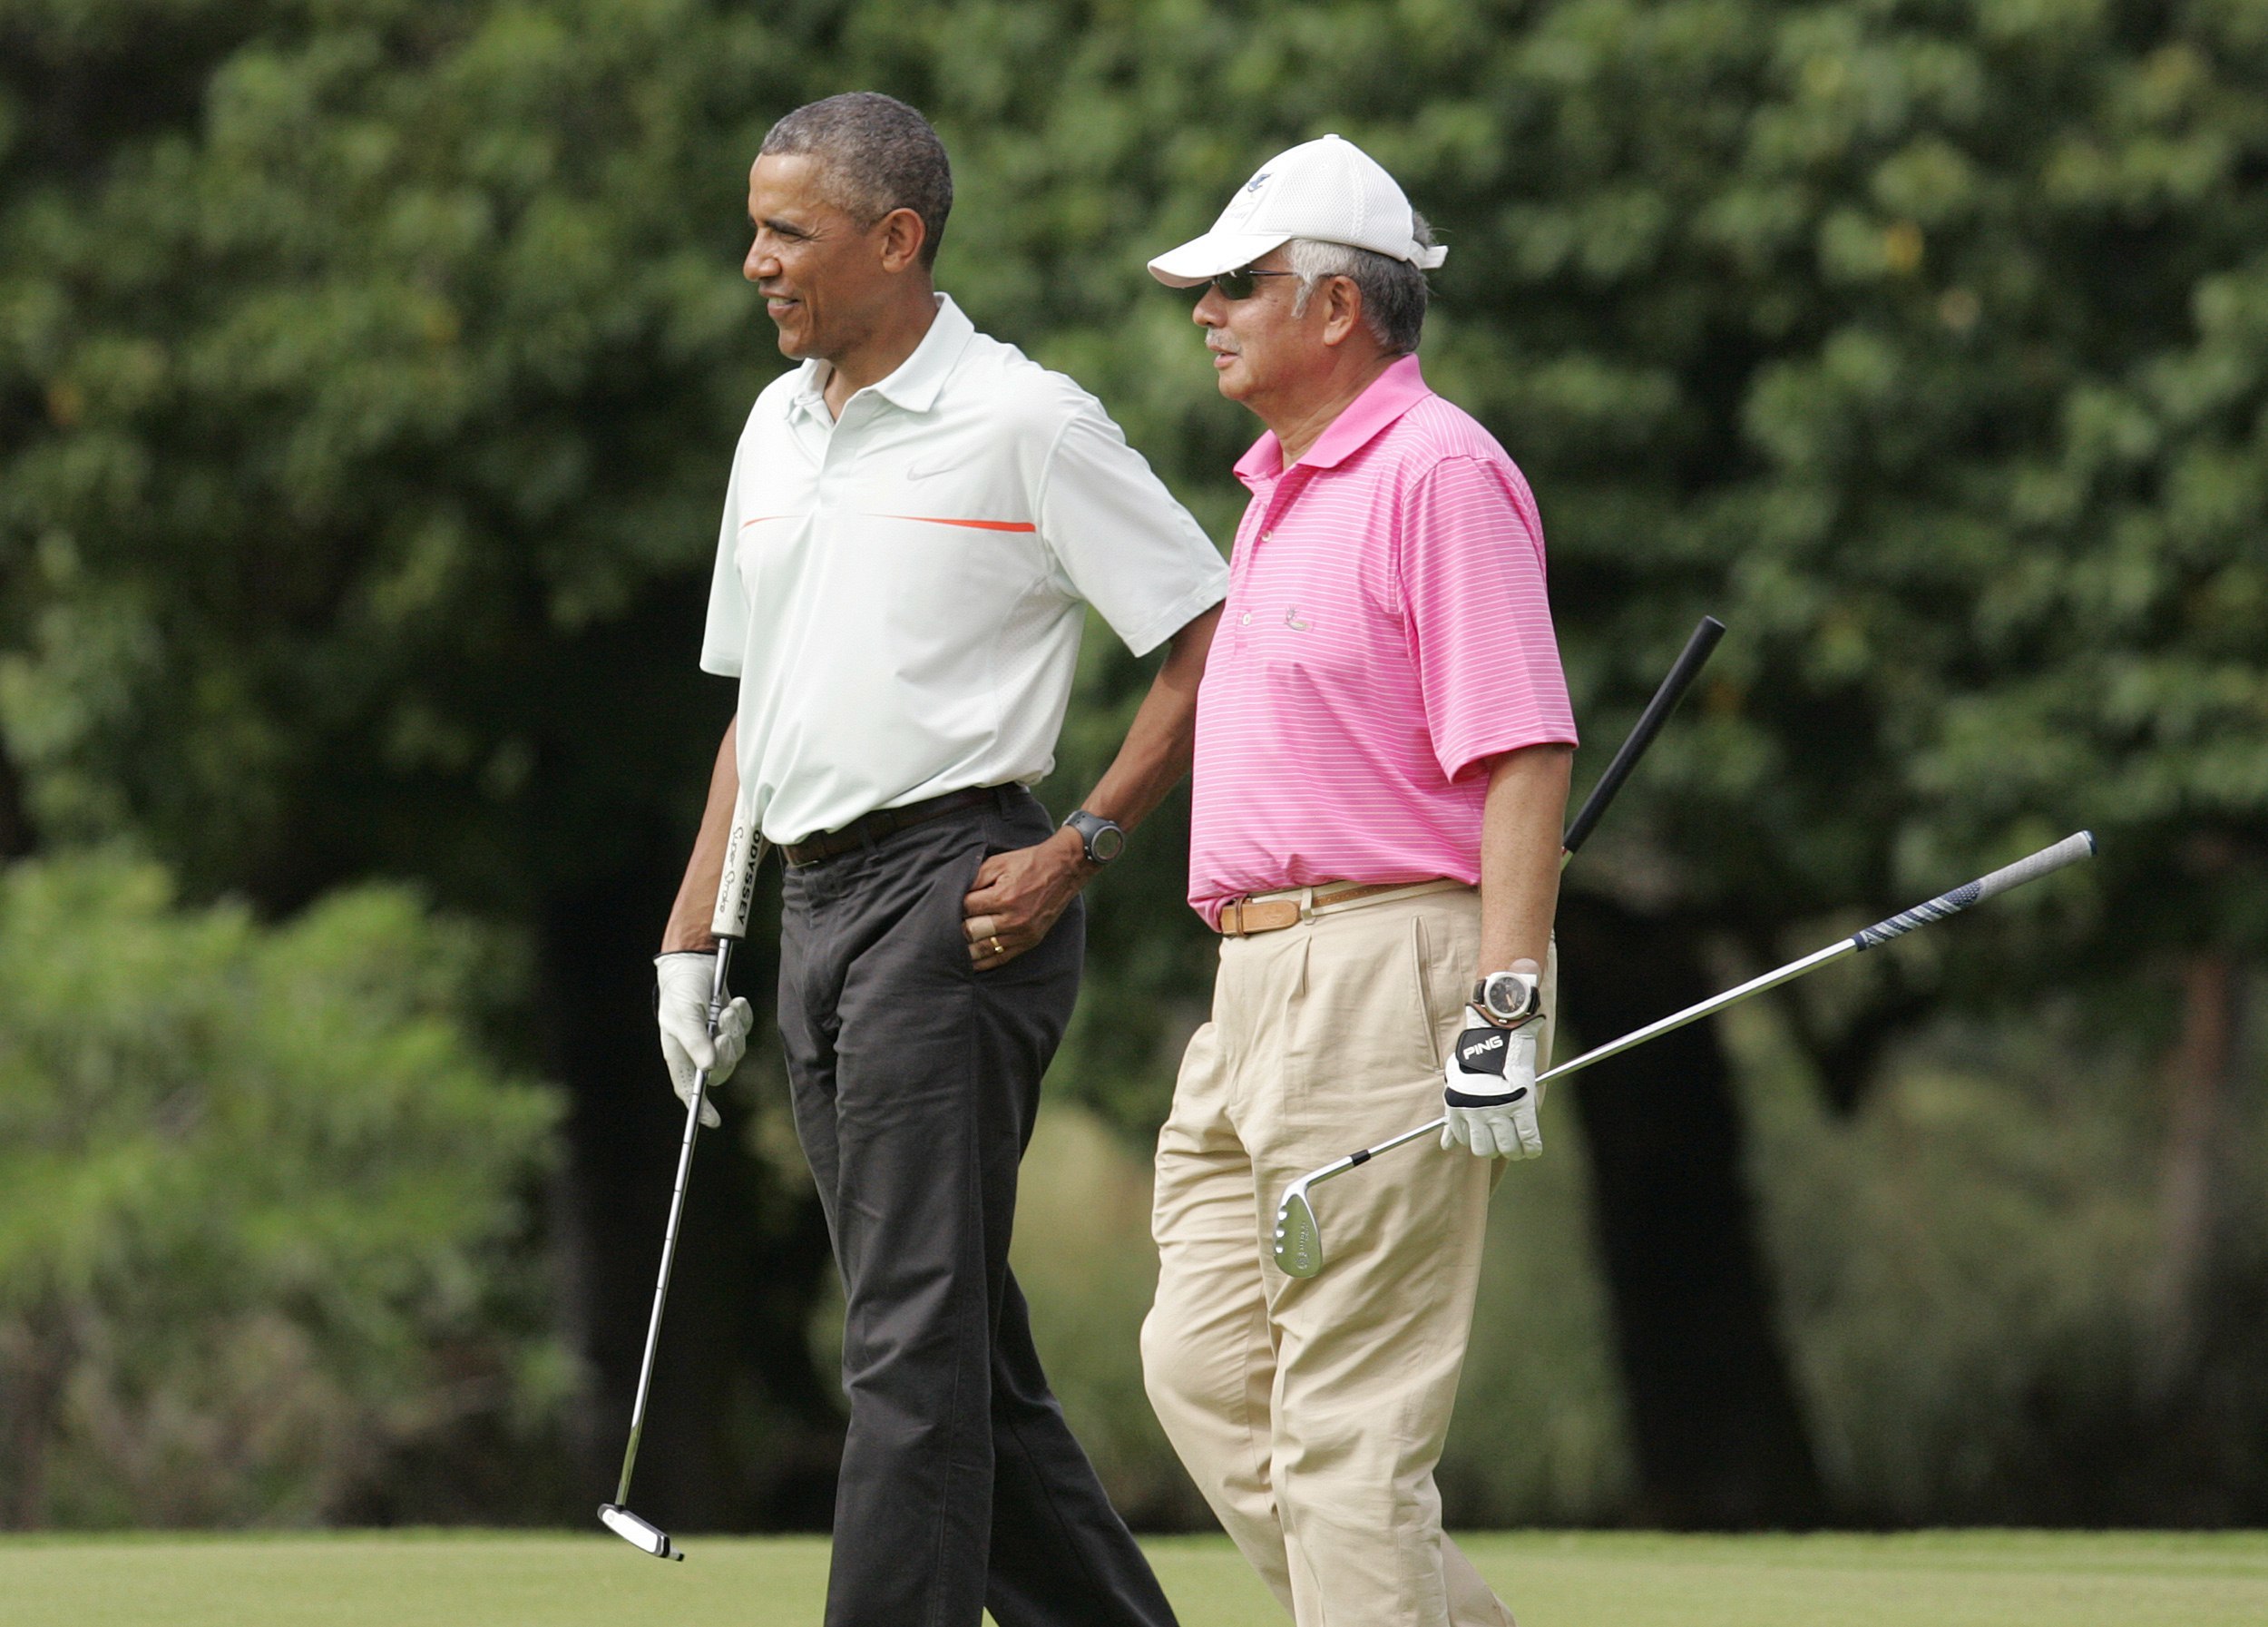 Η Μαλαισία “πνίγεται” και ο πρωθυπουργός της παίζει… γκολφ με τον Ομπάμα! (ΦΩΤΟ)